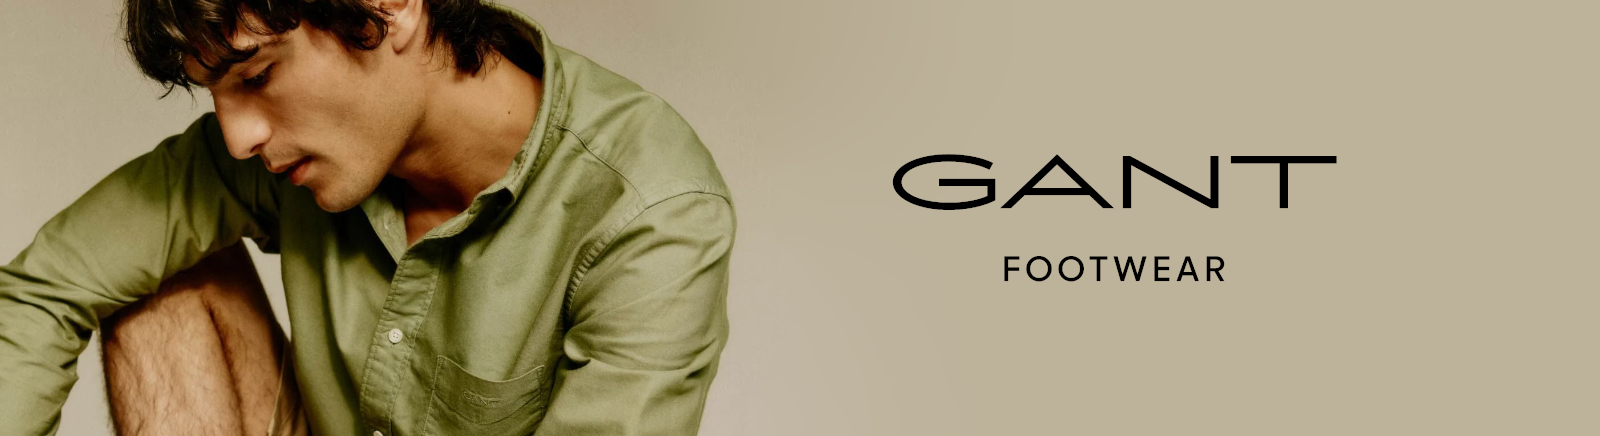 Prange: Gant Stiefeletten für Damen online shoppen